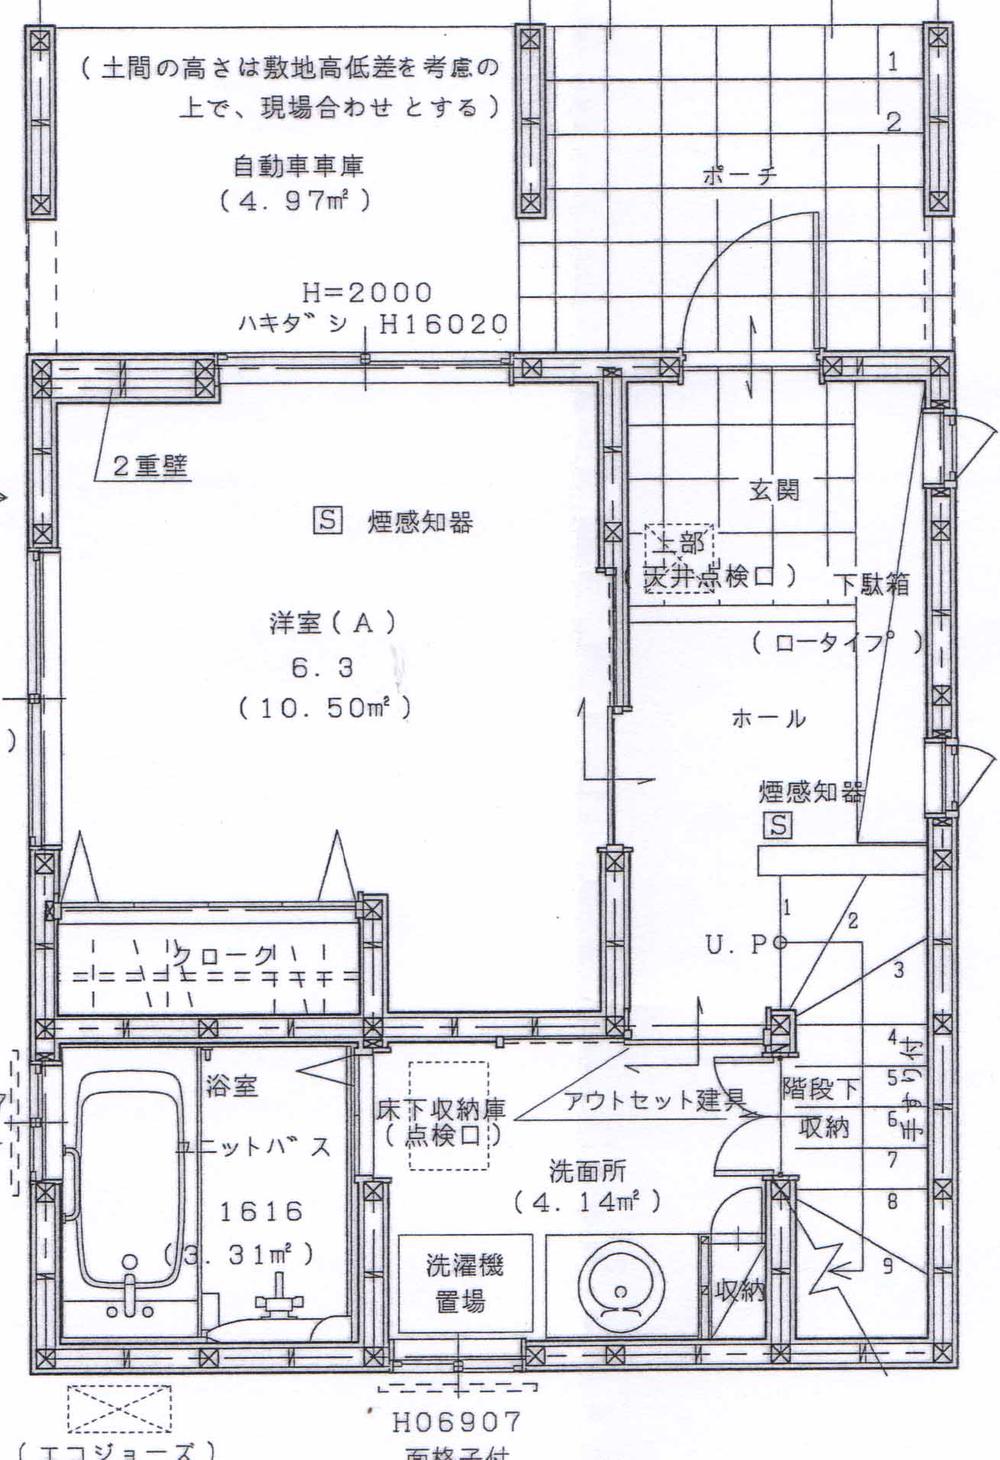 Floor plan. 35,800,000 yen, 4LDK, Land area 66.11 sq m , Building area 99 sq m 1 floor